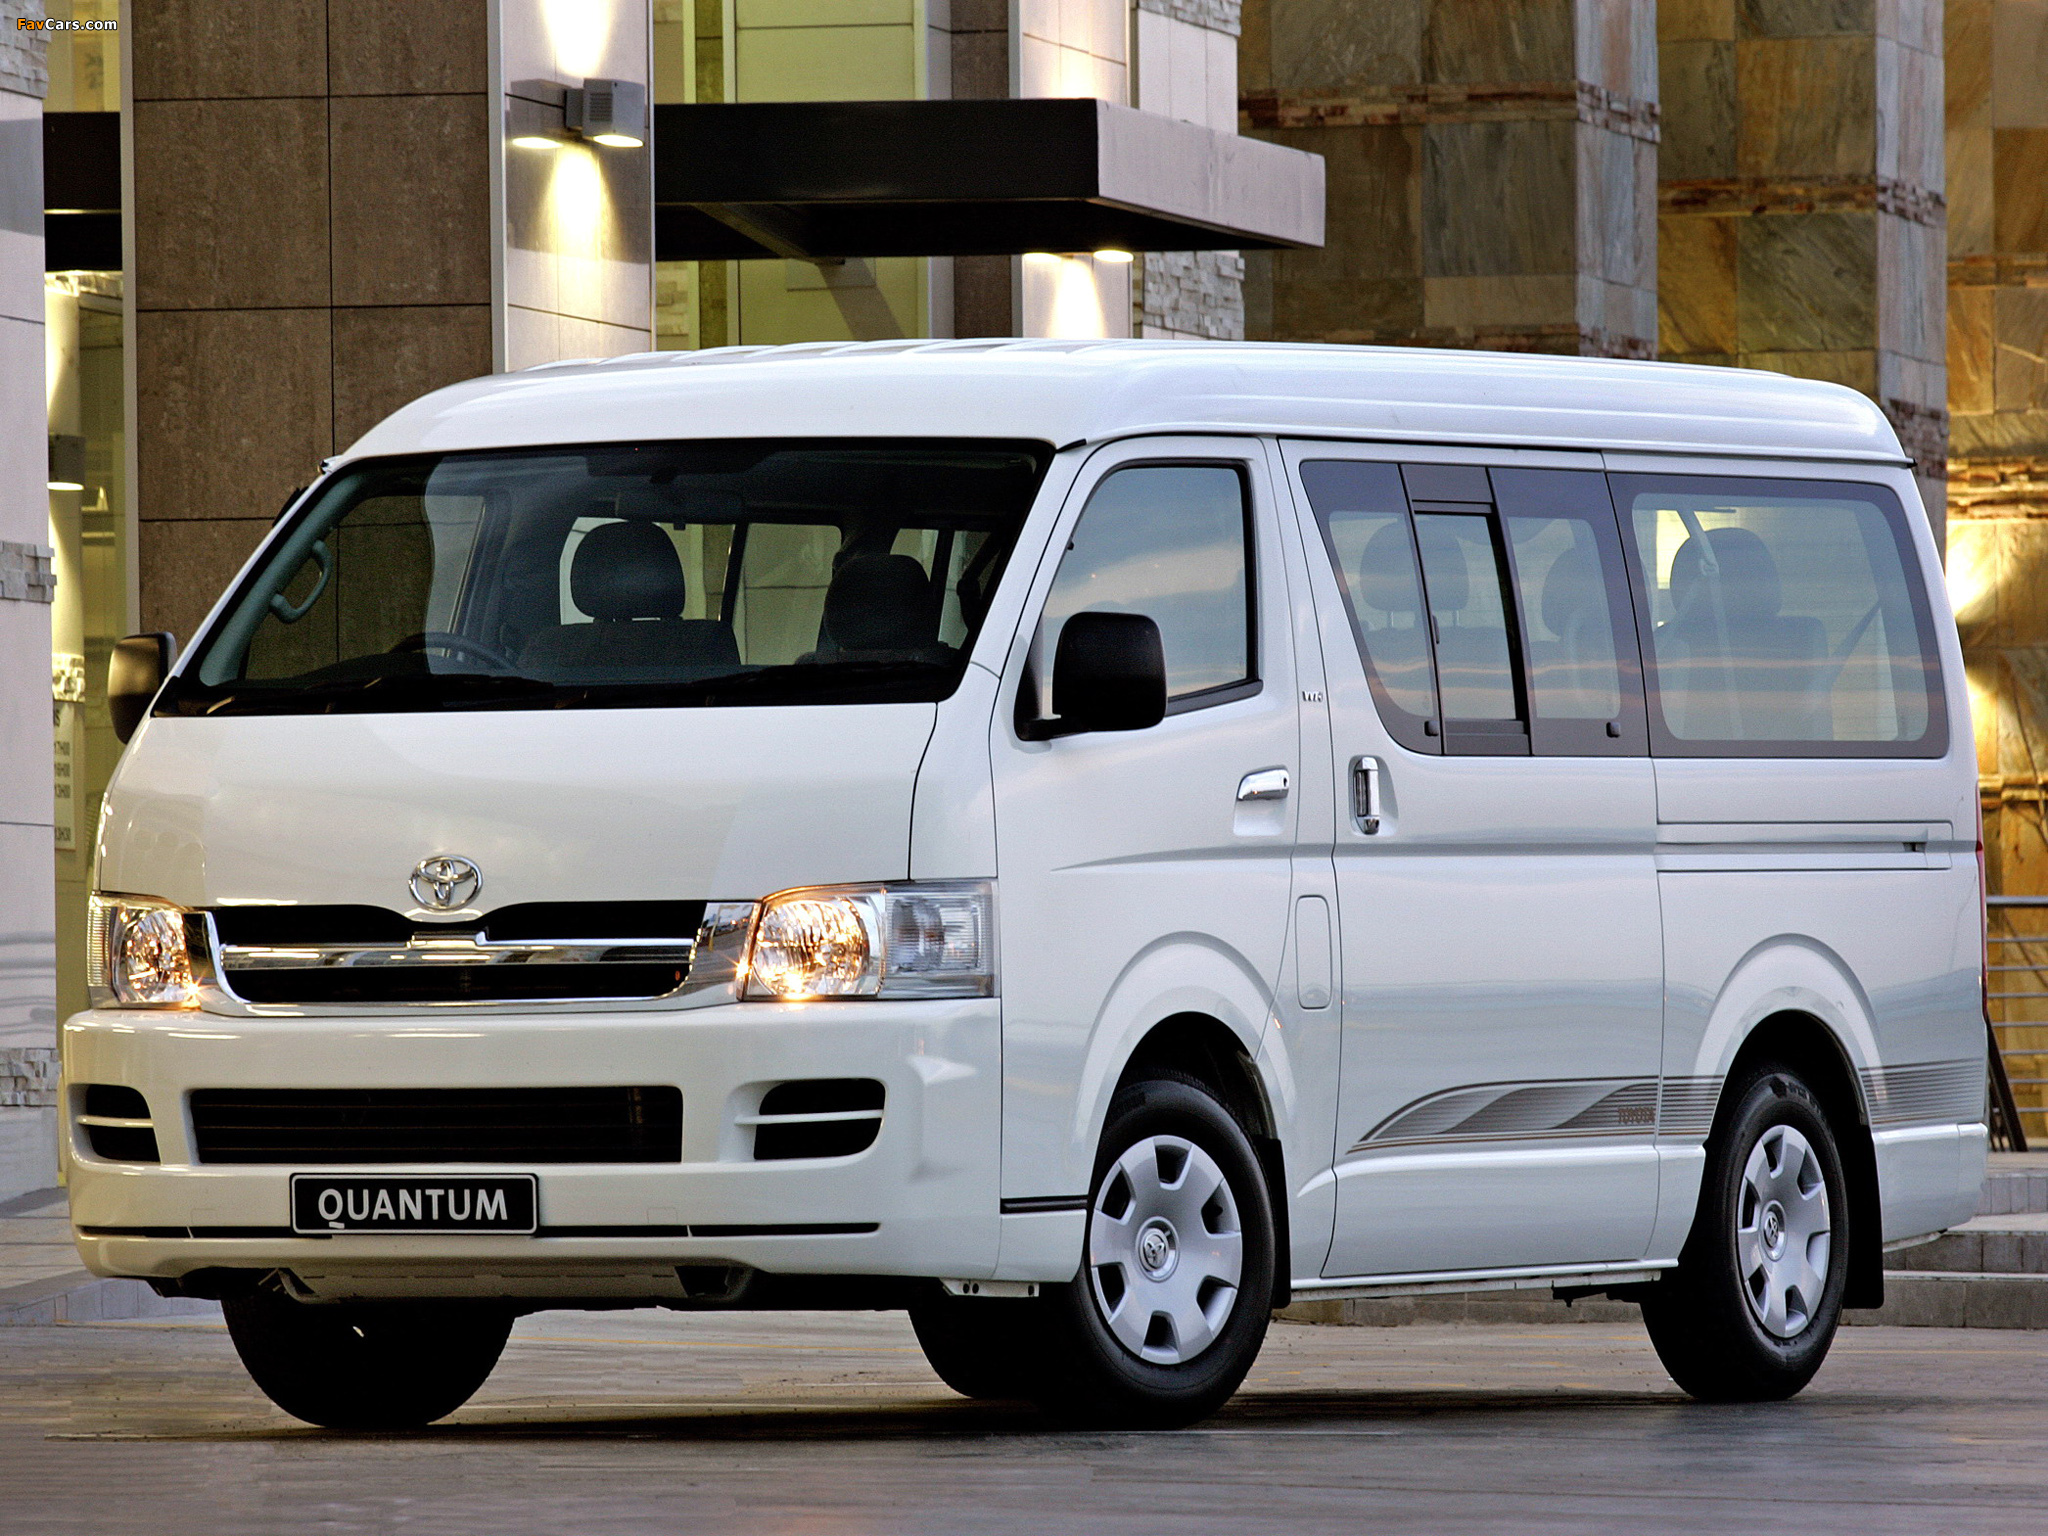 Image Of Toyota Quantum Bus